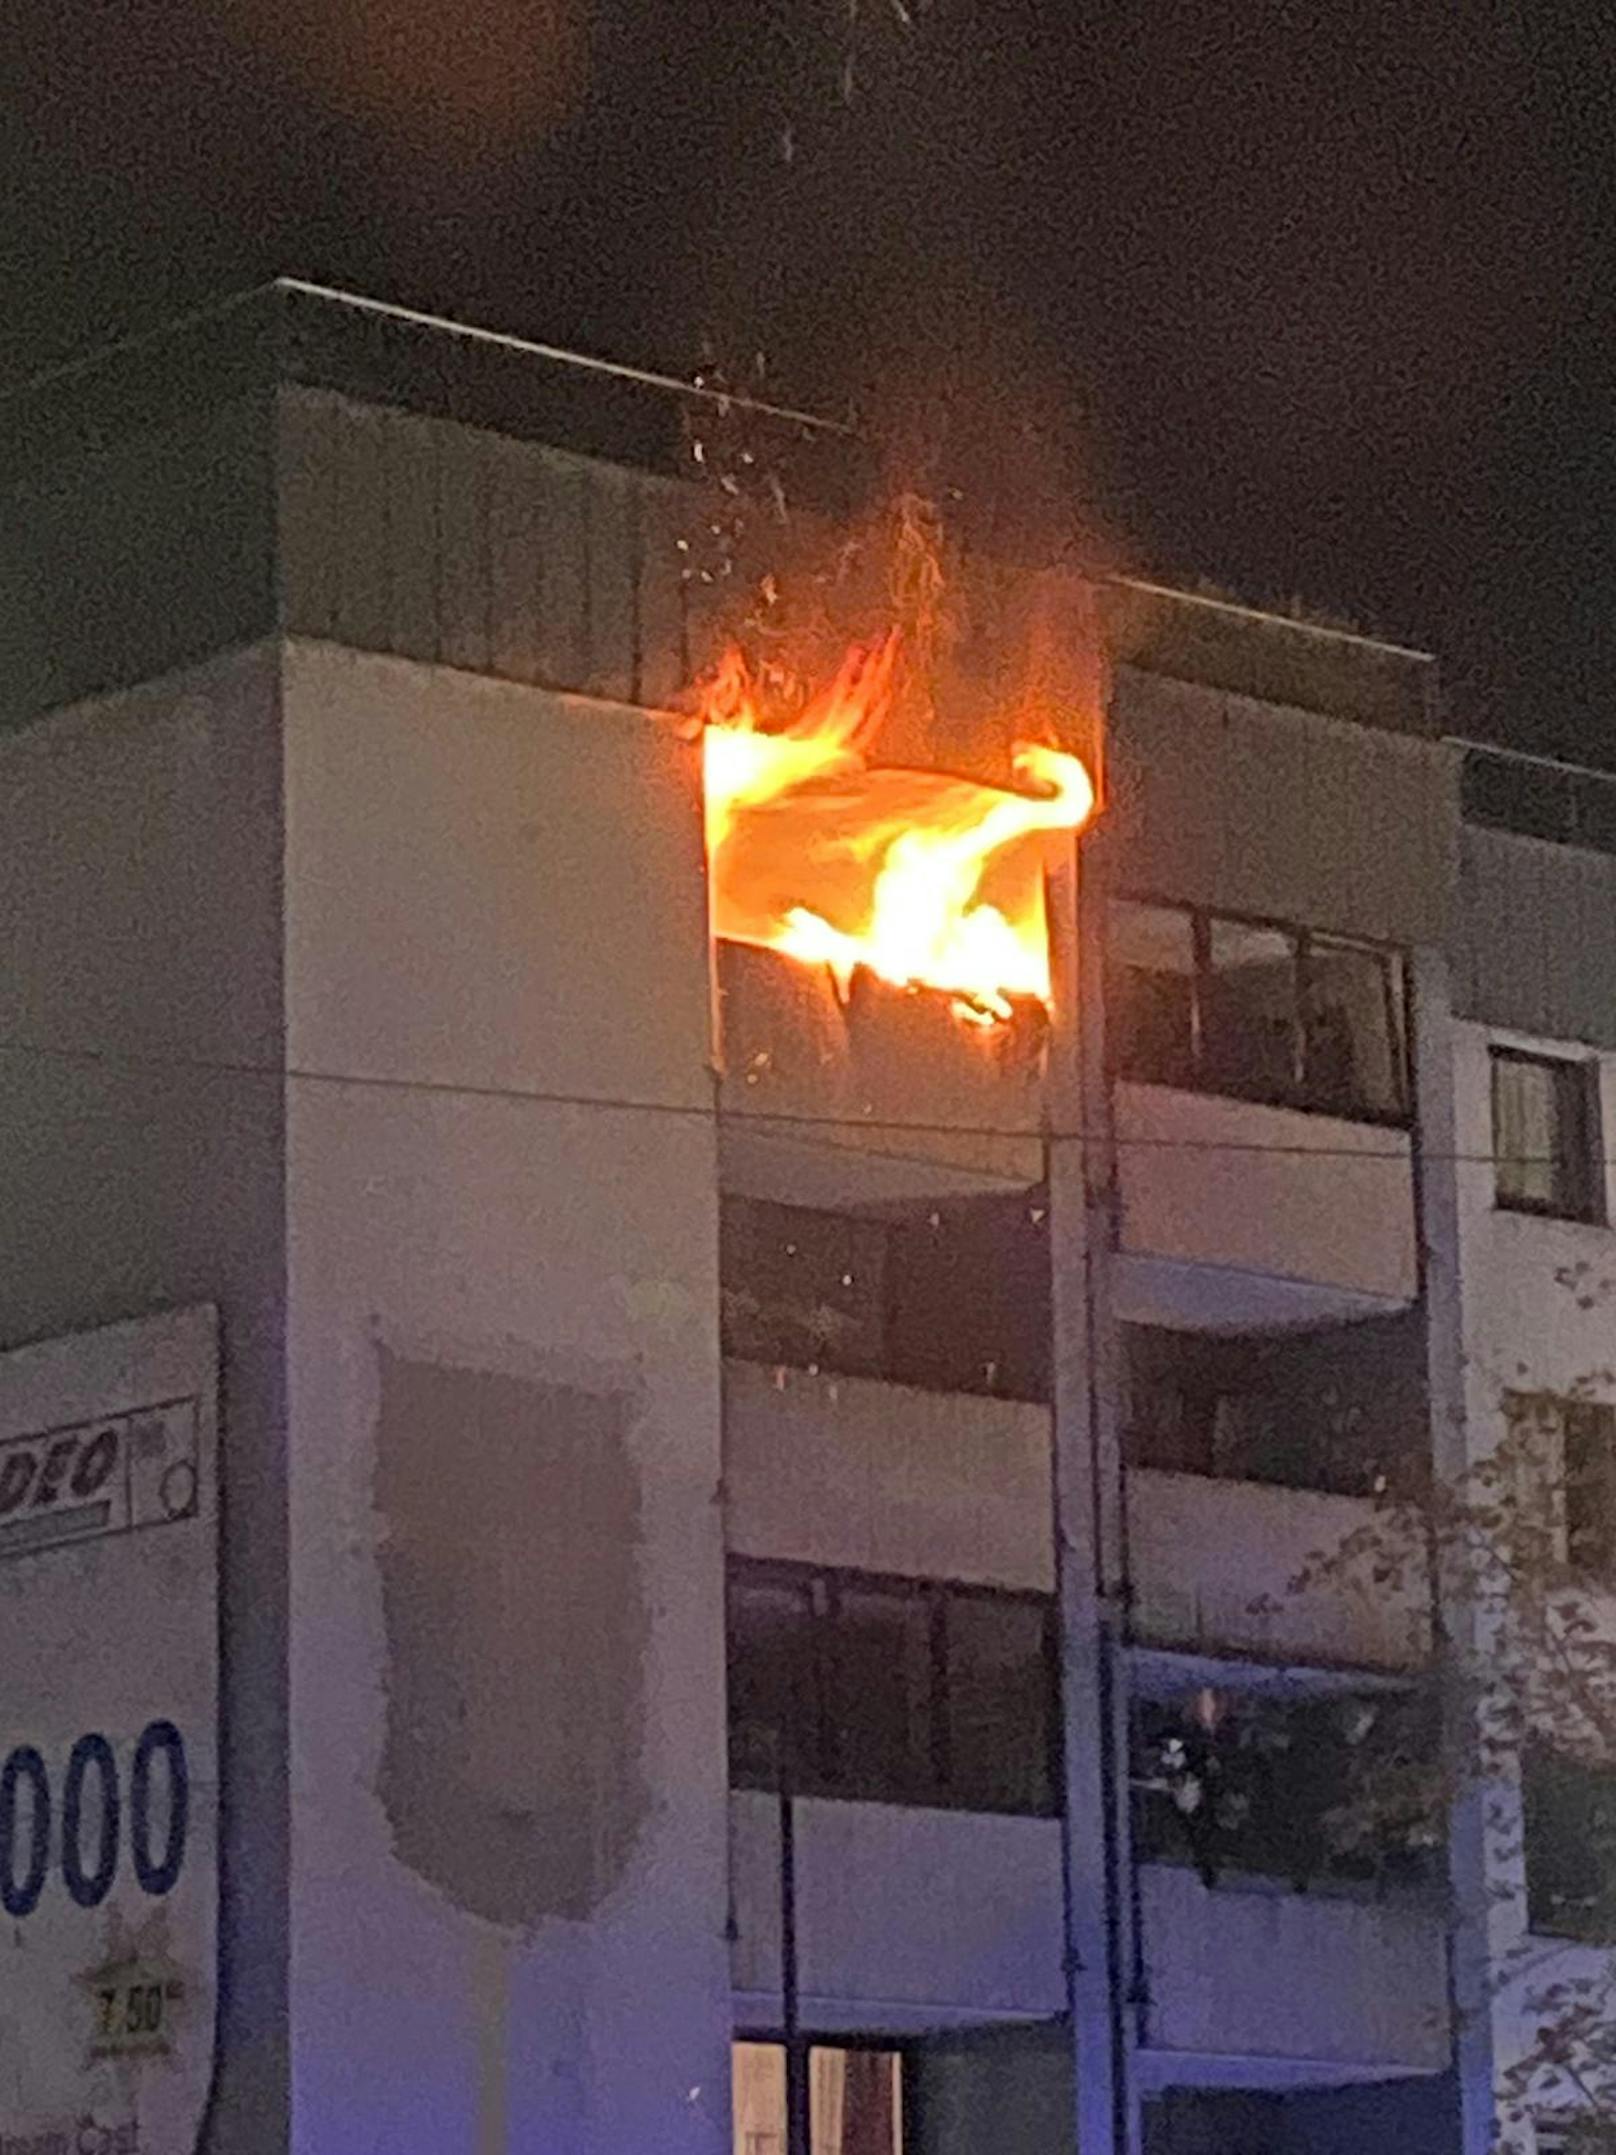 Hohe Flammen schlugen aus der Wohnung.